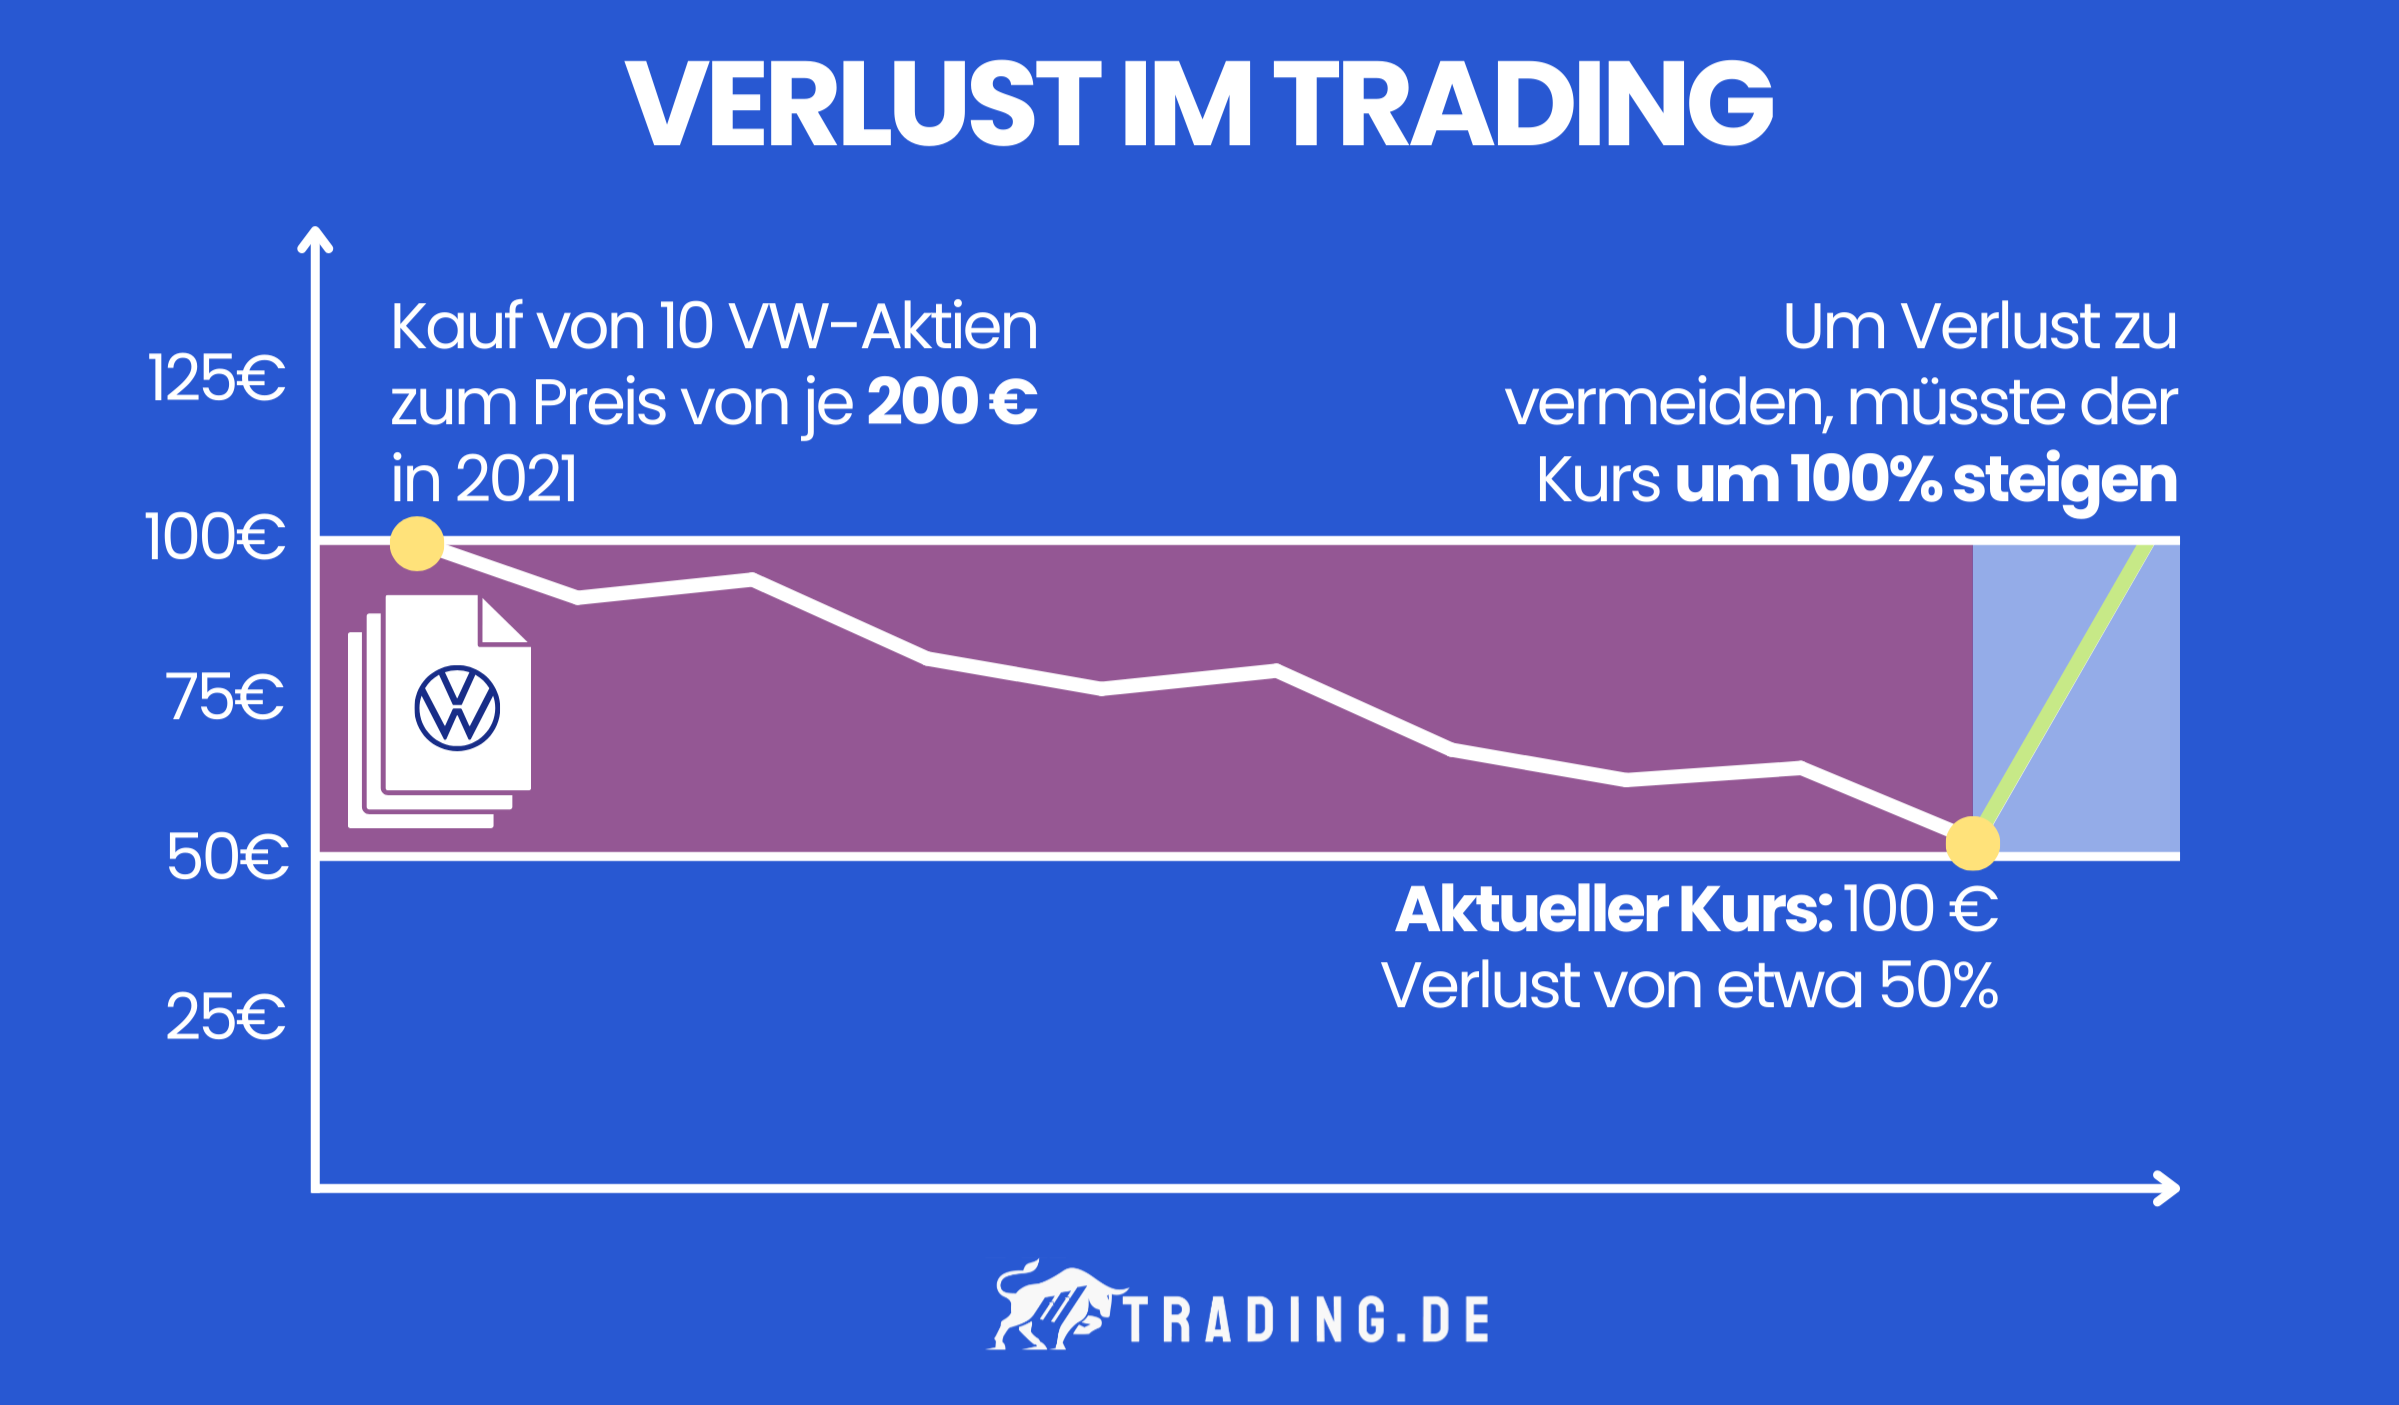 Verlust im Trading Beispiel: Erwerb von 10 VW-Aktien zum Preis von je 200 € je im Jahr 2021. VW-Aktie erleidet einen Verlust von 50 % und ist heute nur noch 100 € wert. Um den Verlust zu vermeiden, muss der Kurs um 100 % steigen.